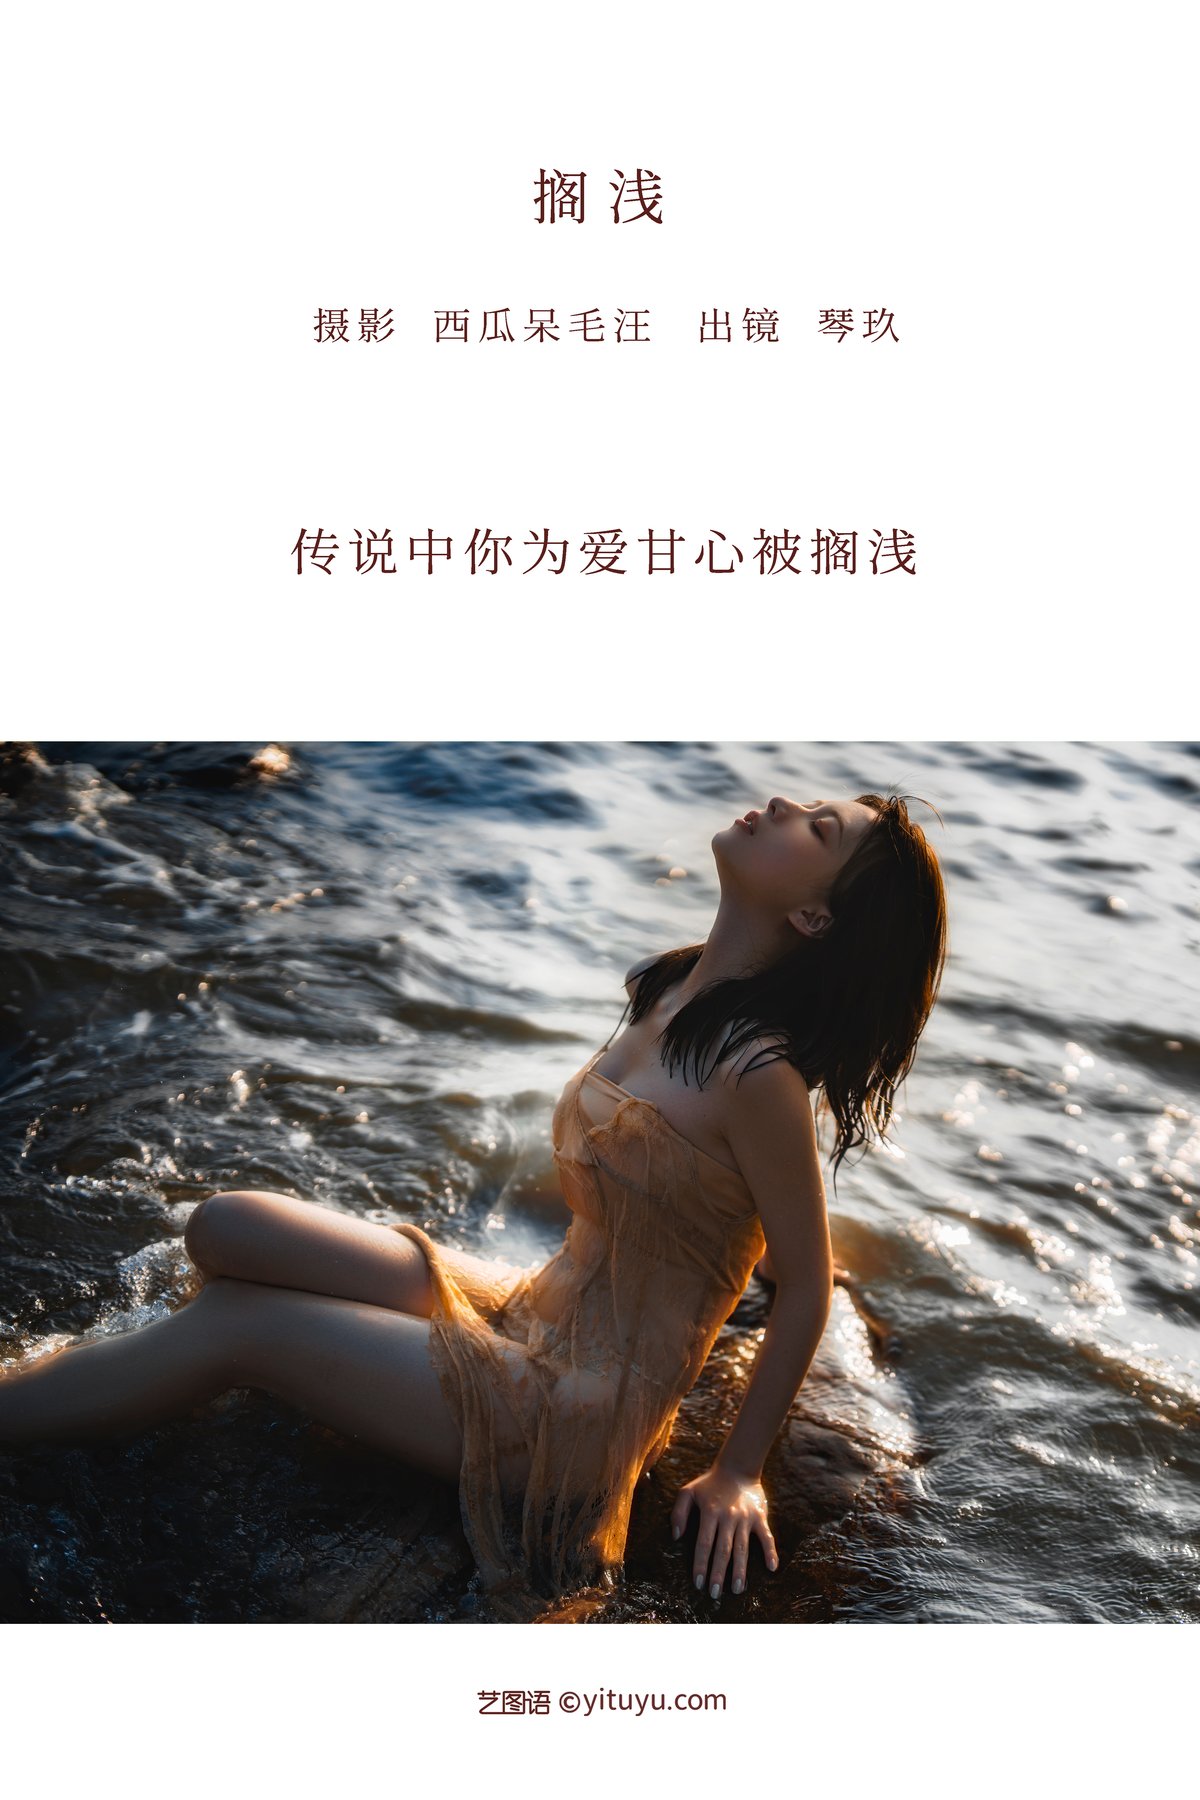 YiTuYu艺图语 Vol 2886 Qing Qing Qin Jiu 0002 9579553910.jpg